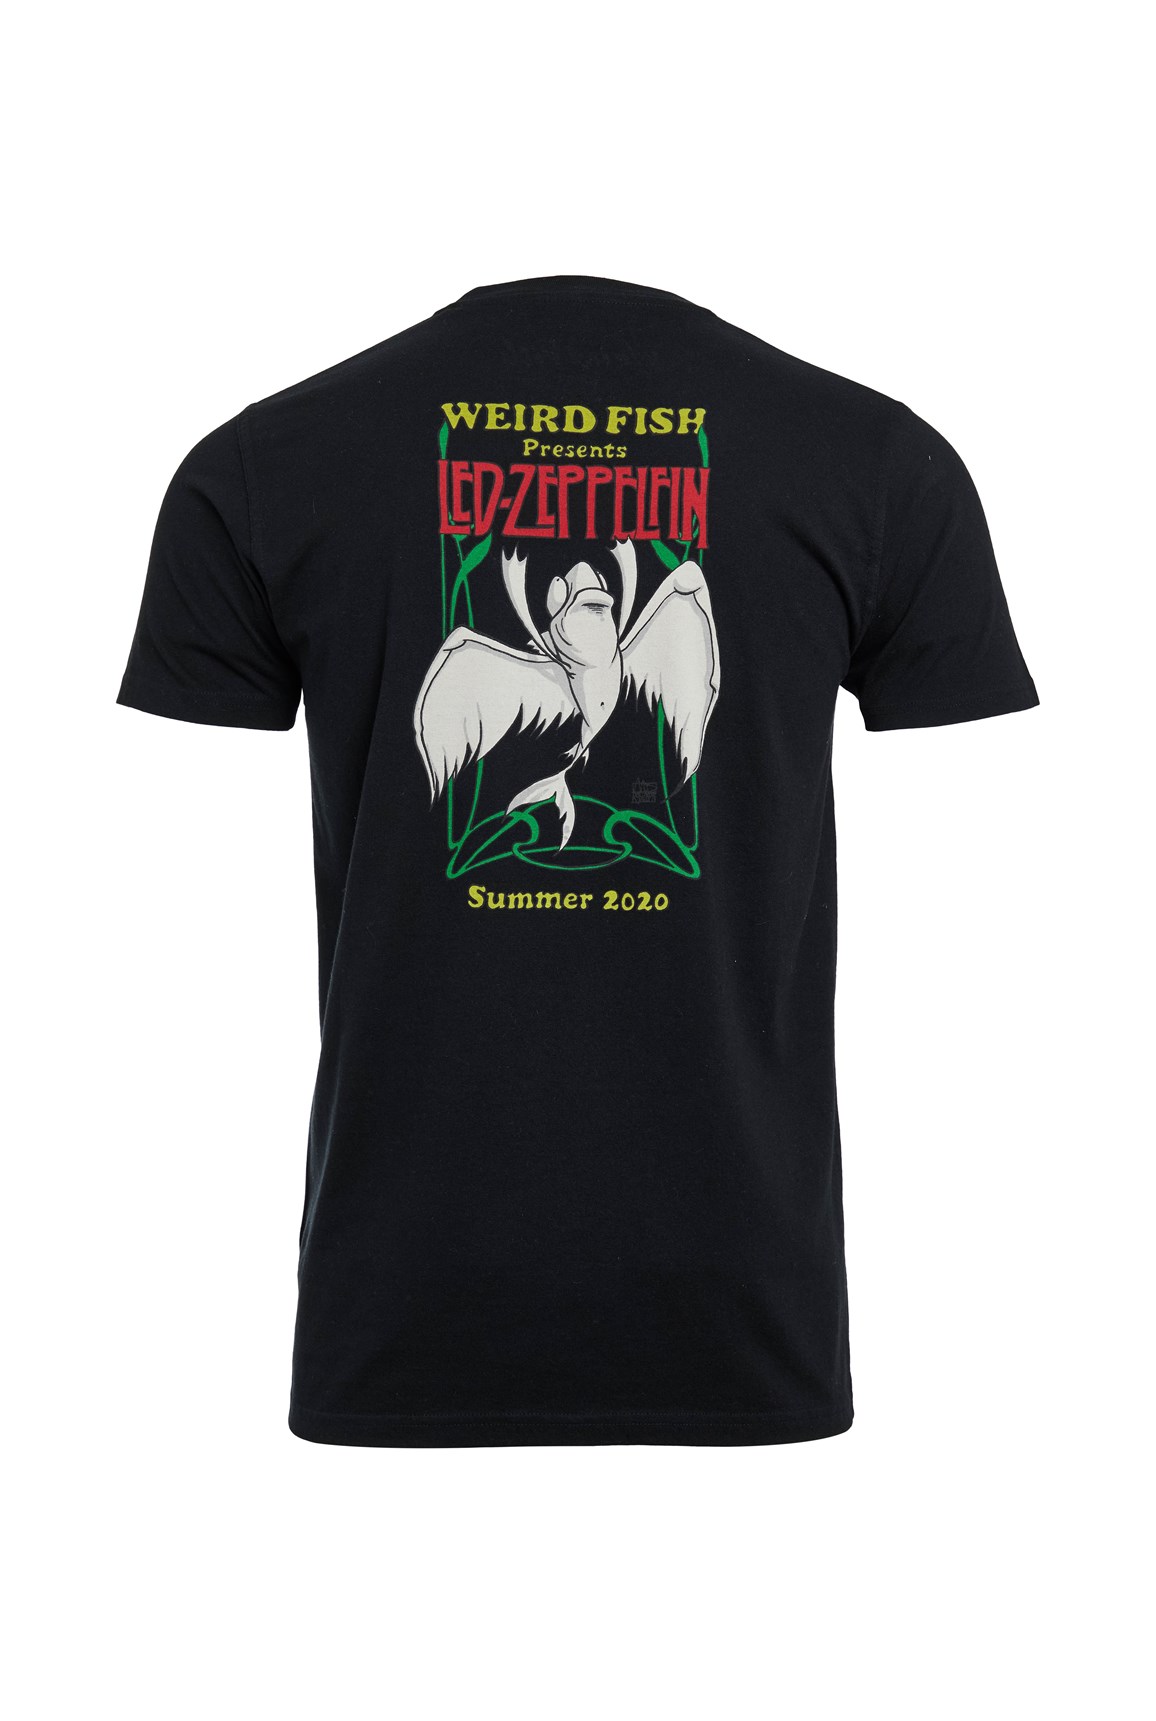 Weird Fish Zeppelfin Artist T-Shirt Black Size 3XL